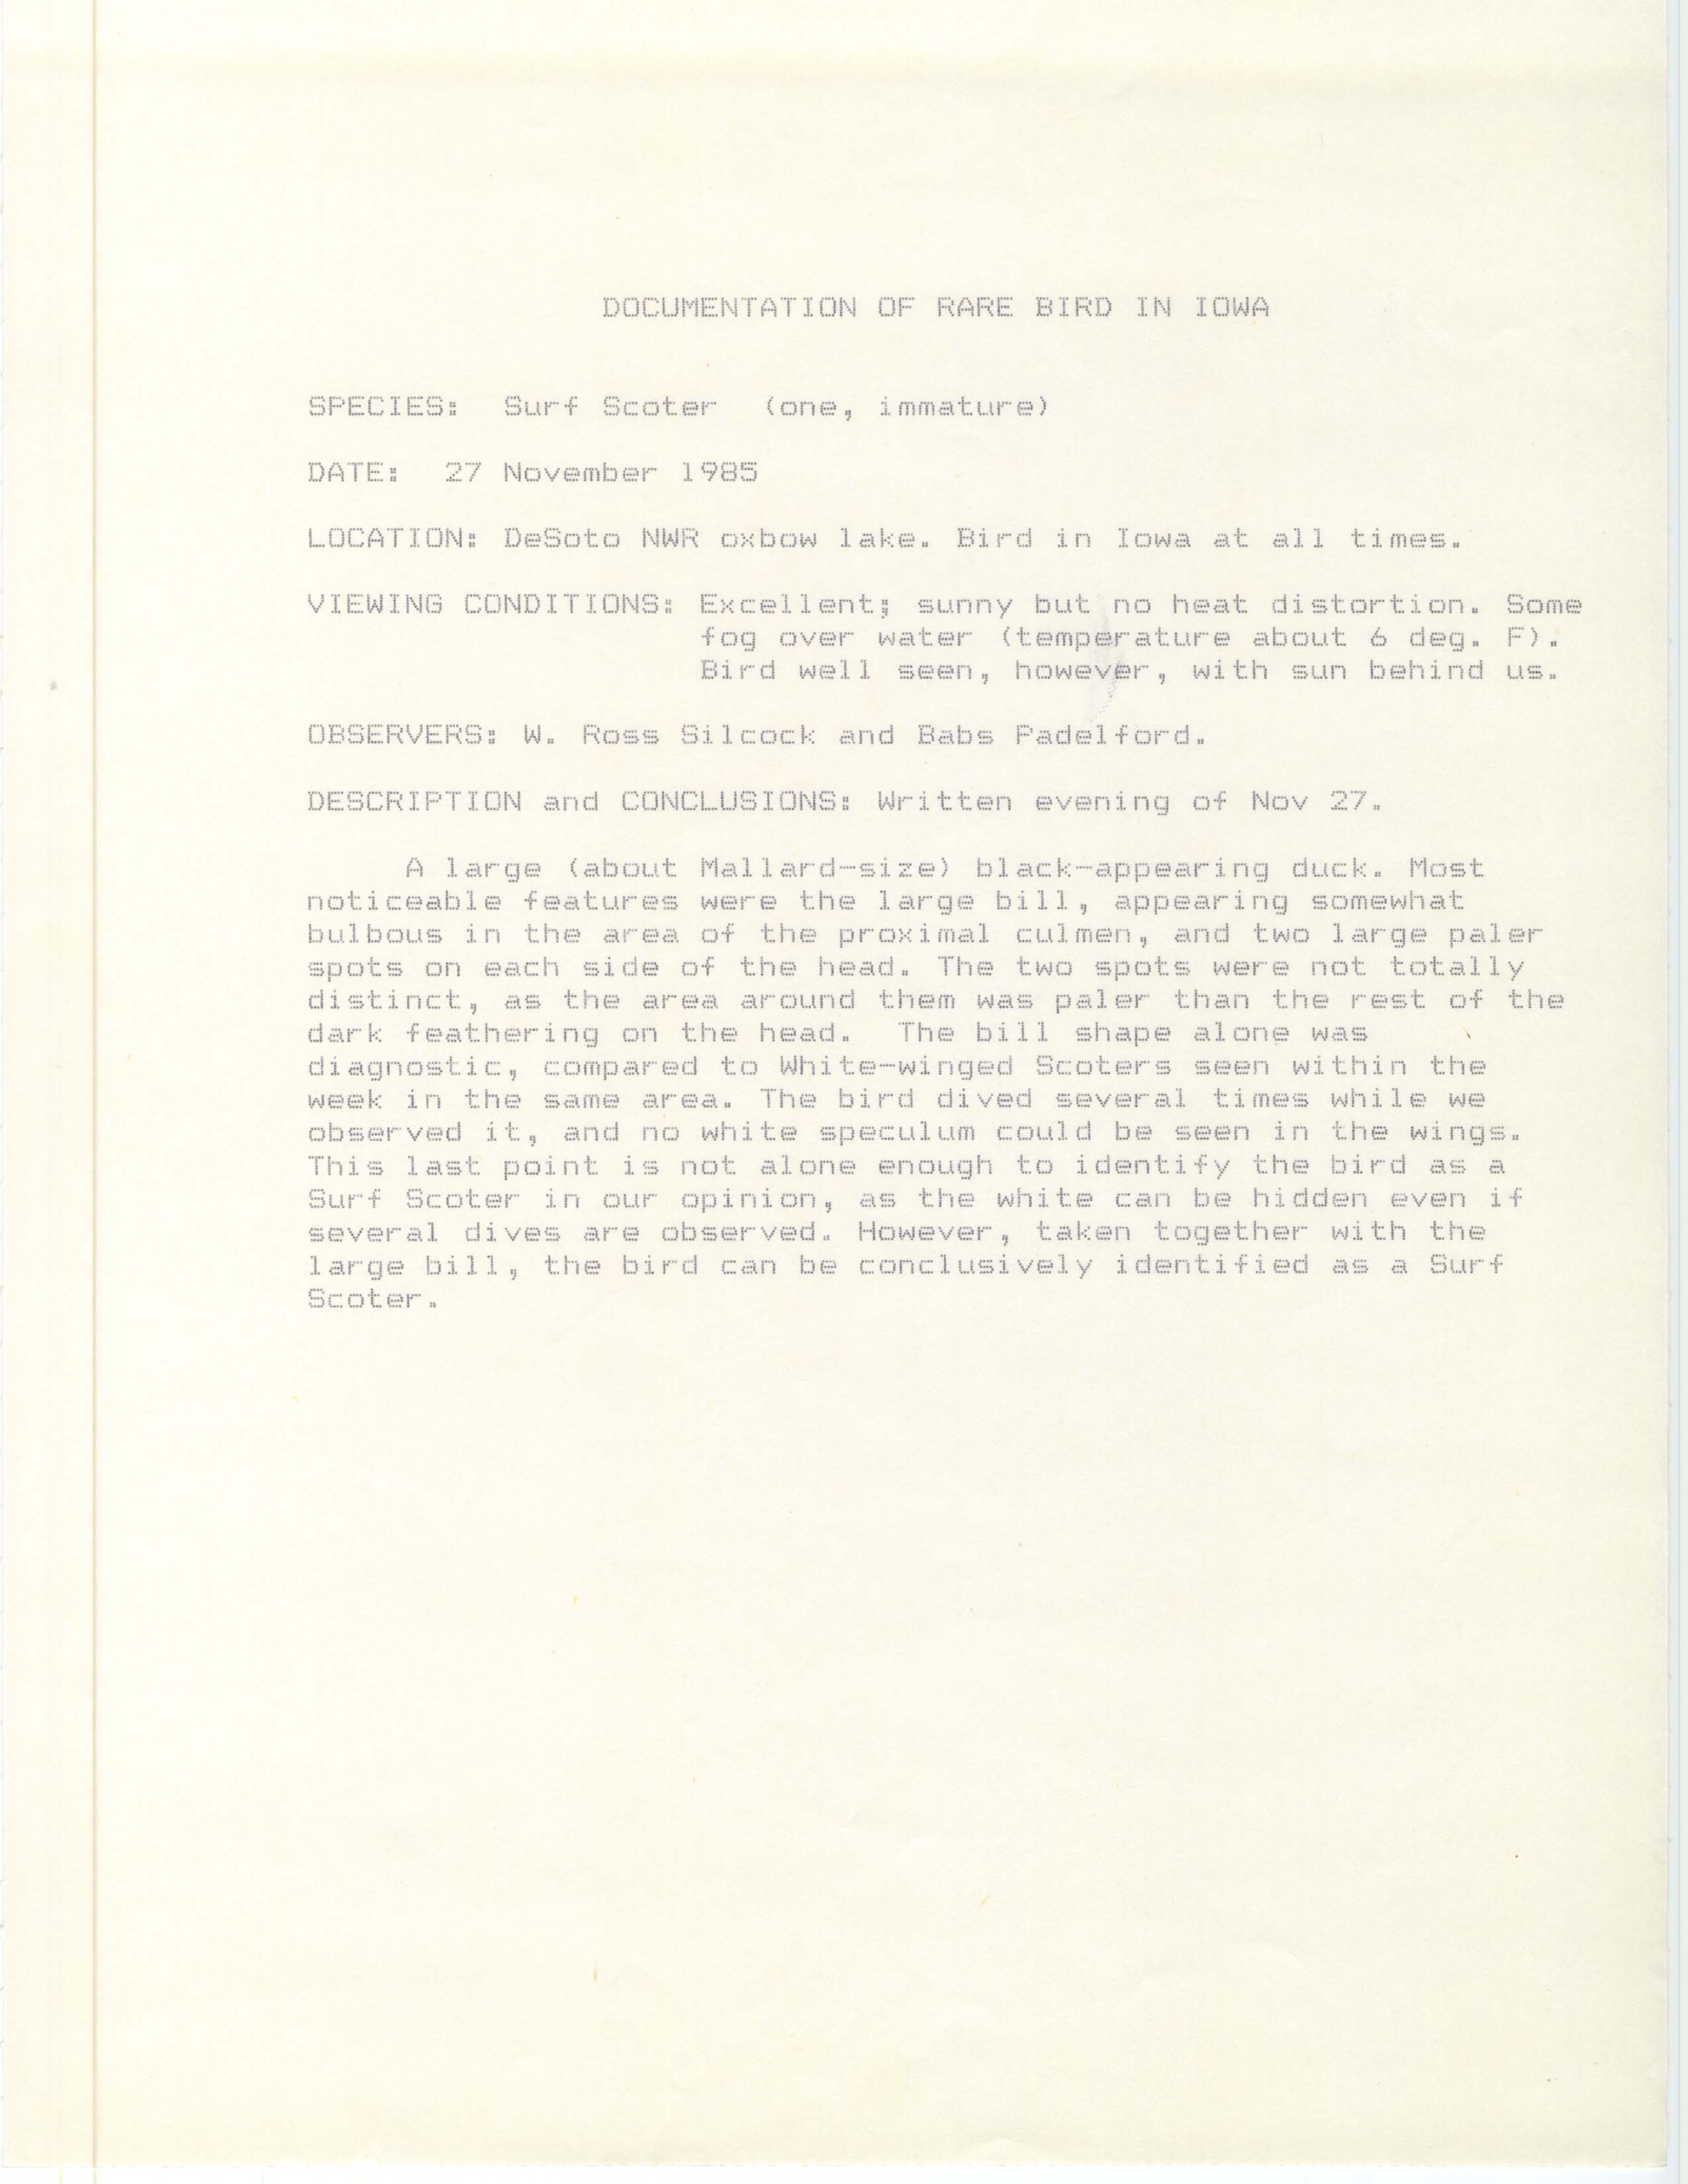 Rare bird documentation form for Surf Scoter at DeSoto National Wildlife Refuge in 1985